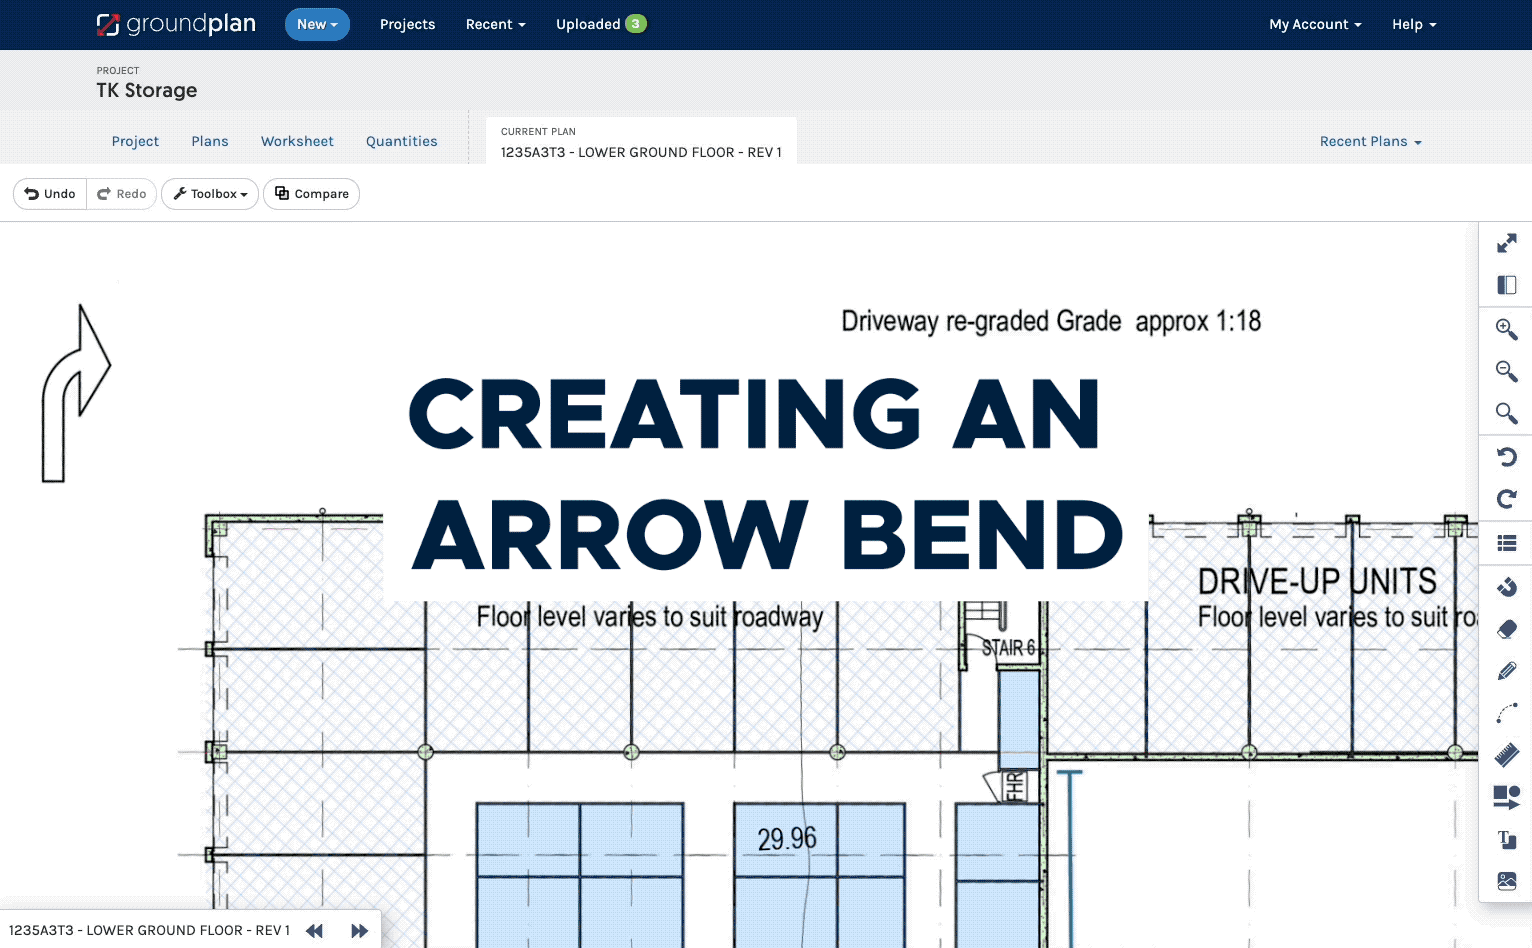 D1 - Creating an arrow bend